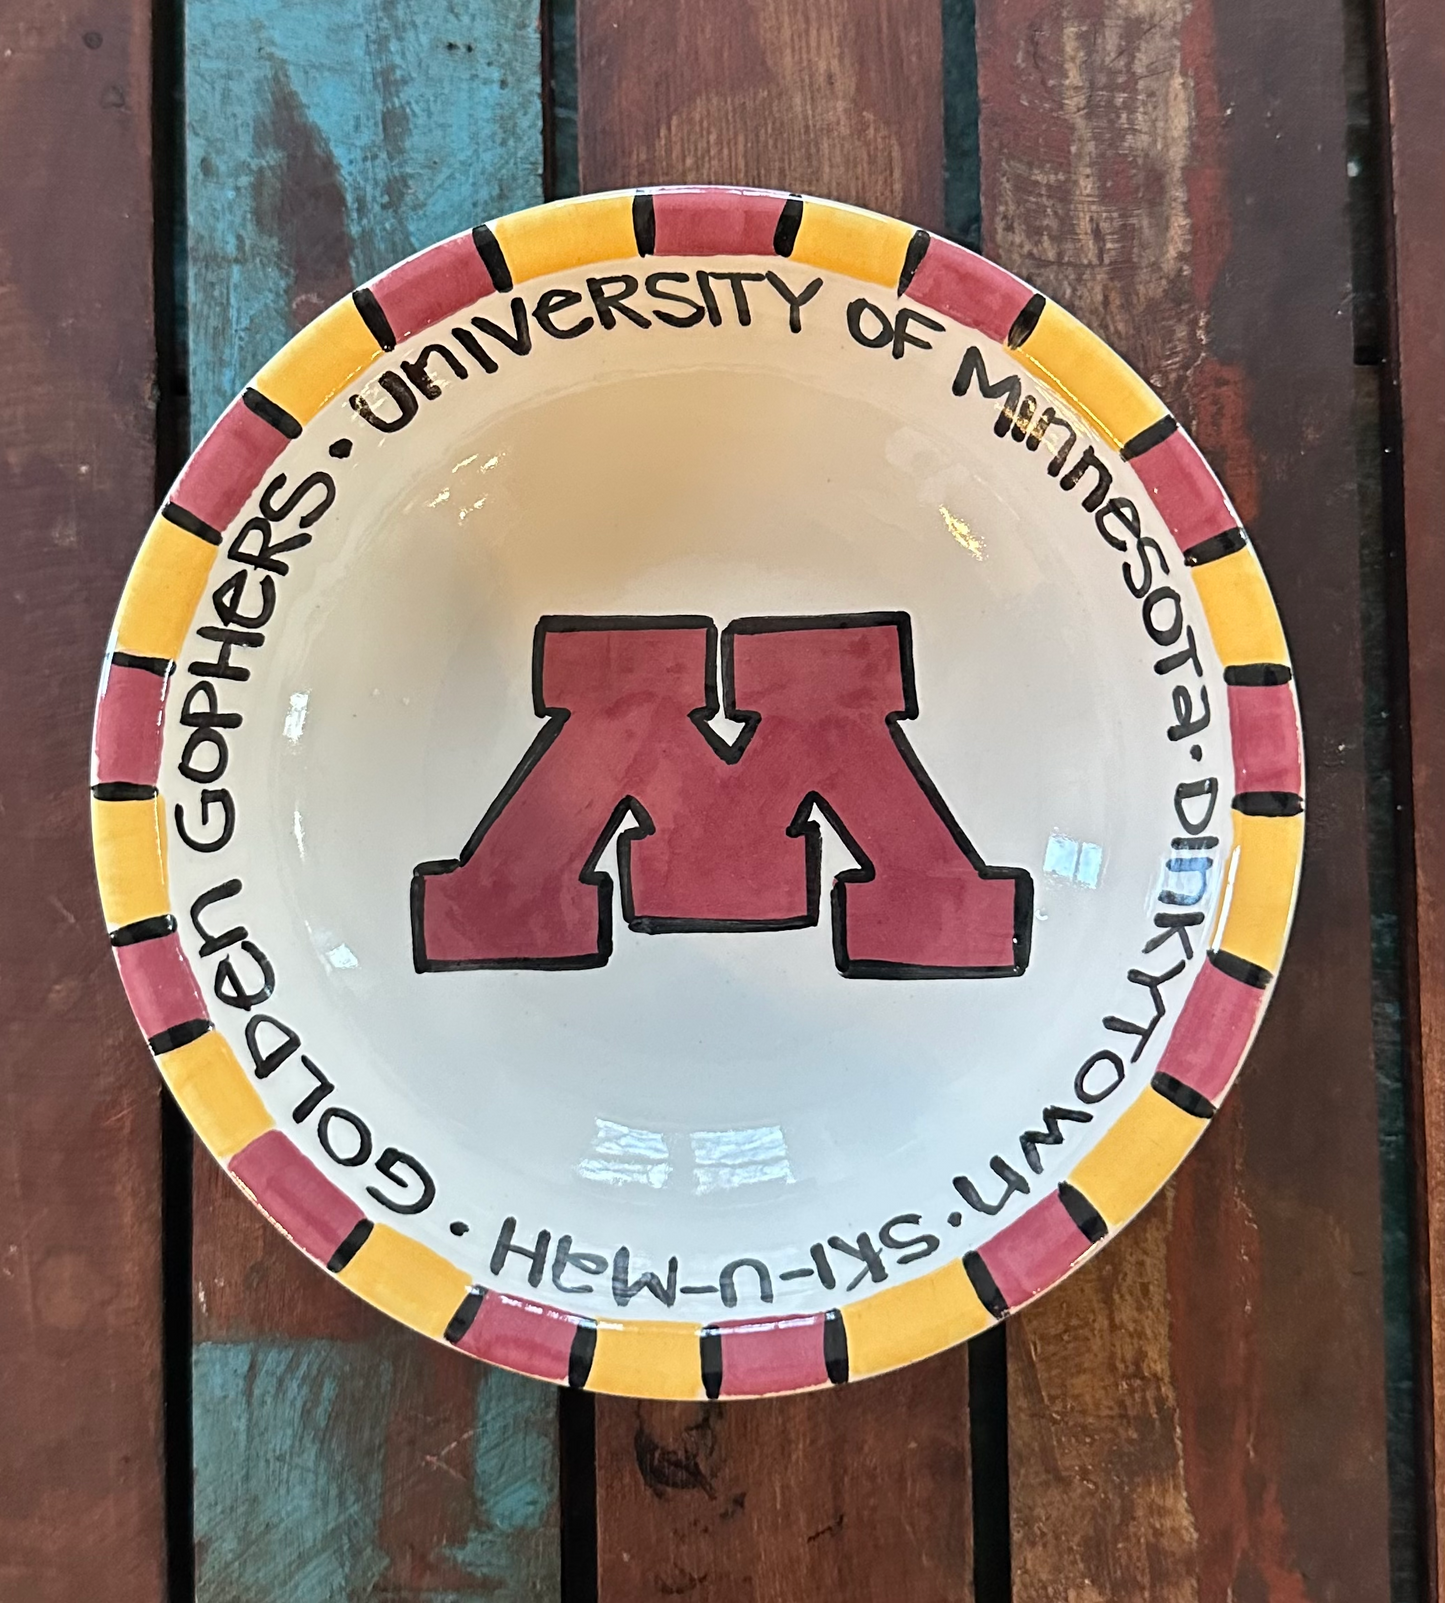 University of Minnesota Perfect Bowl